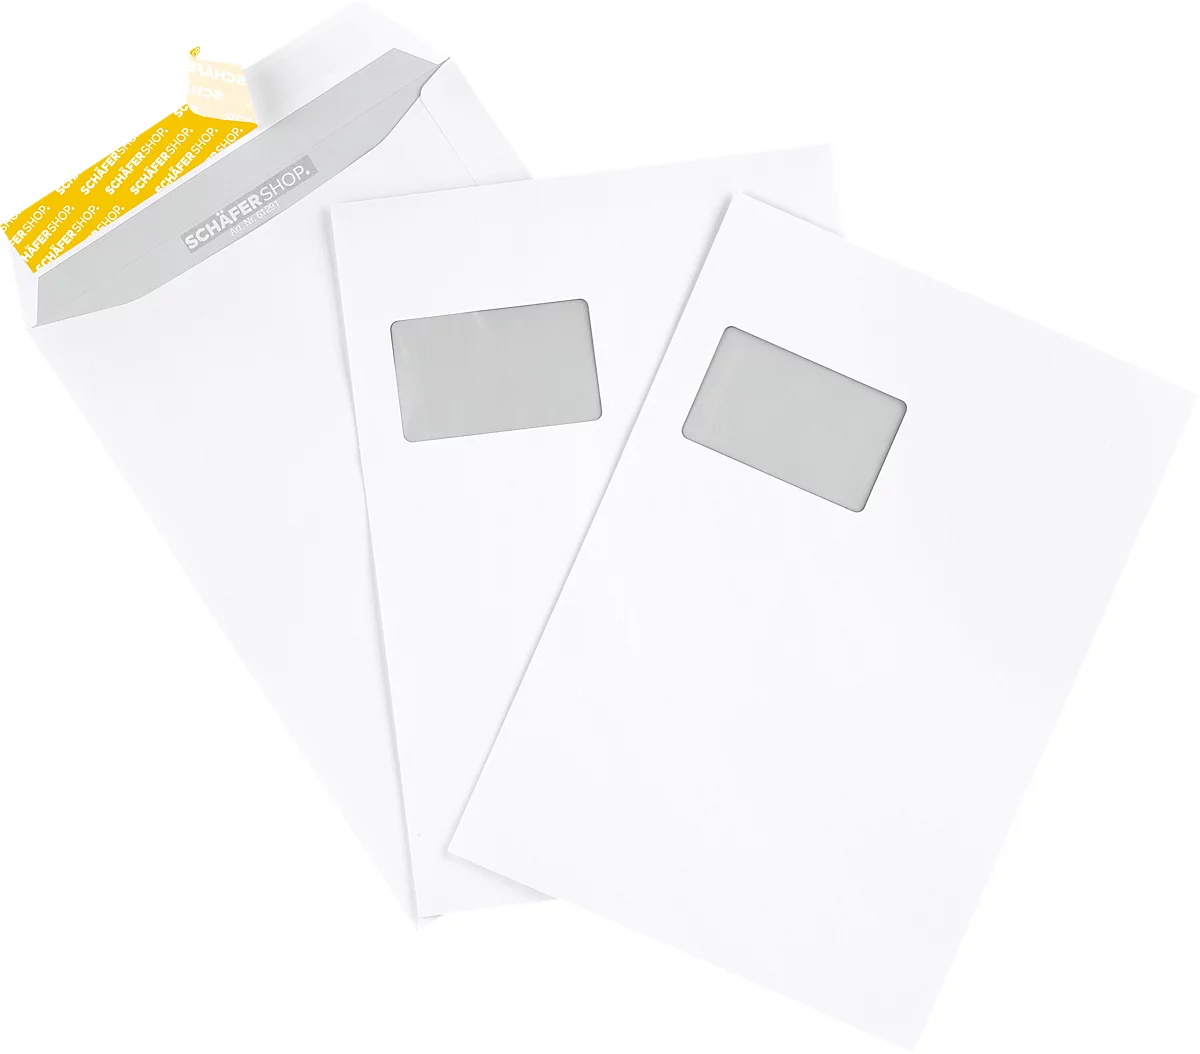 Enveloppes - Blanc ~240 x 240 mm, 100 g/qm Offset, Sans fenêtre